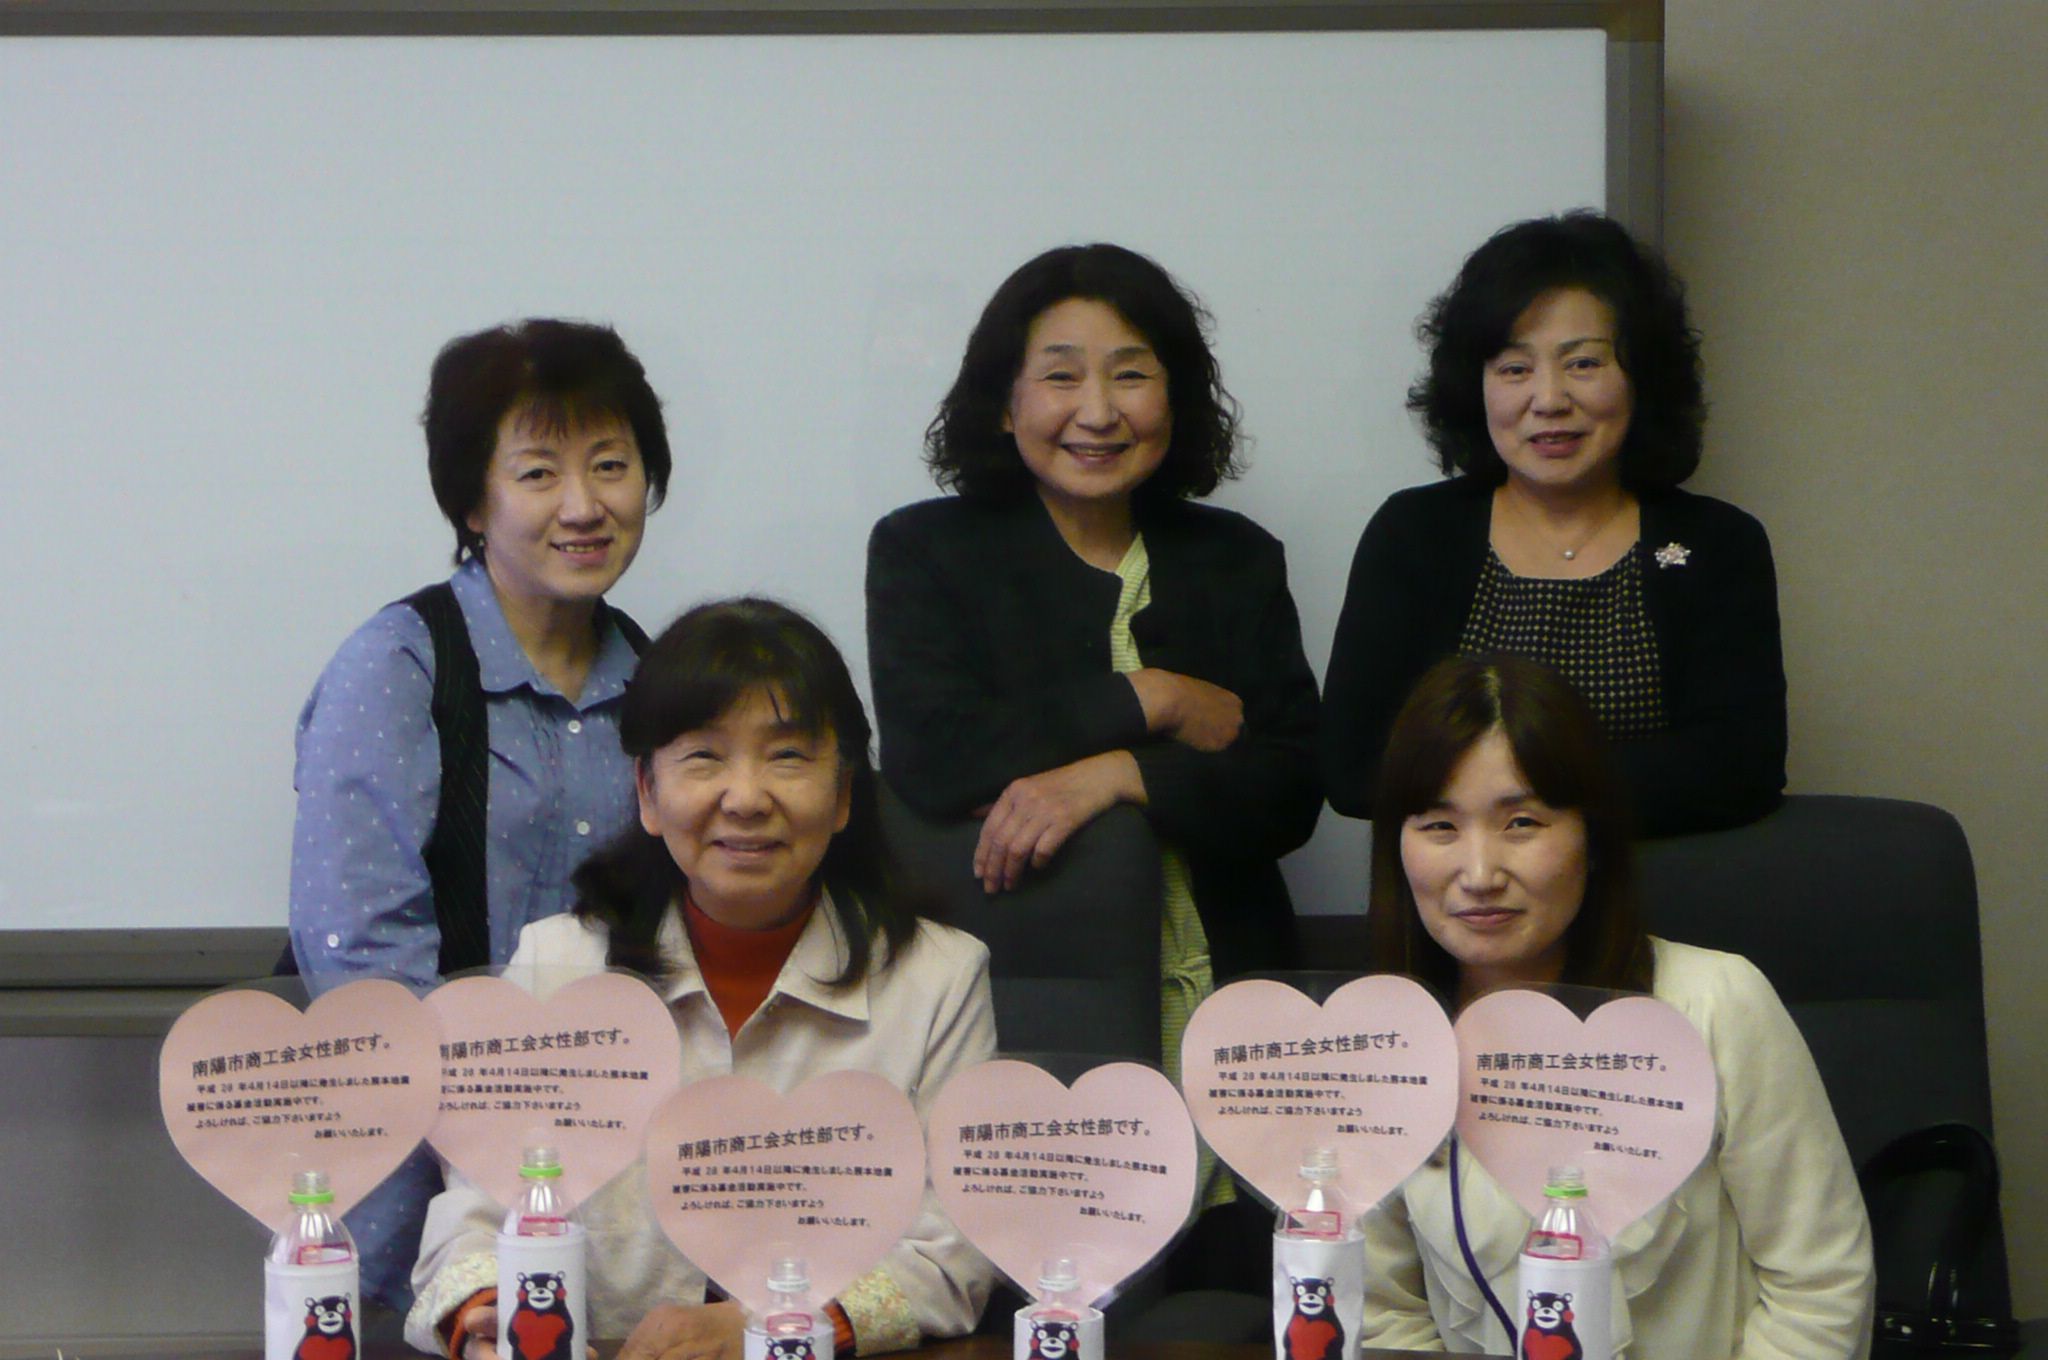 熊本地震に係る南陽市商工会女性部募金活動について